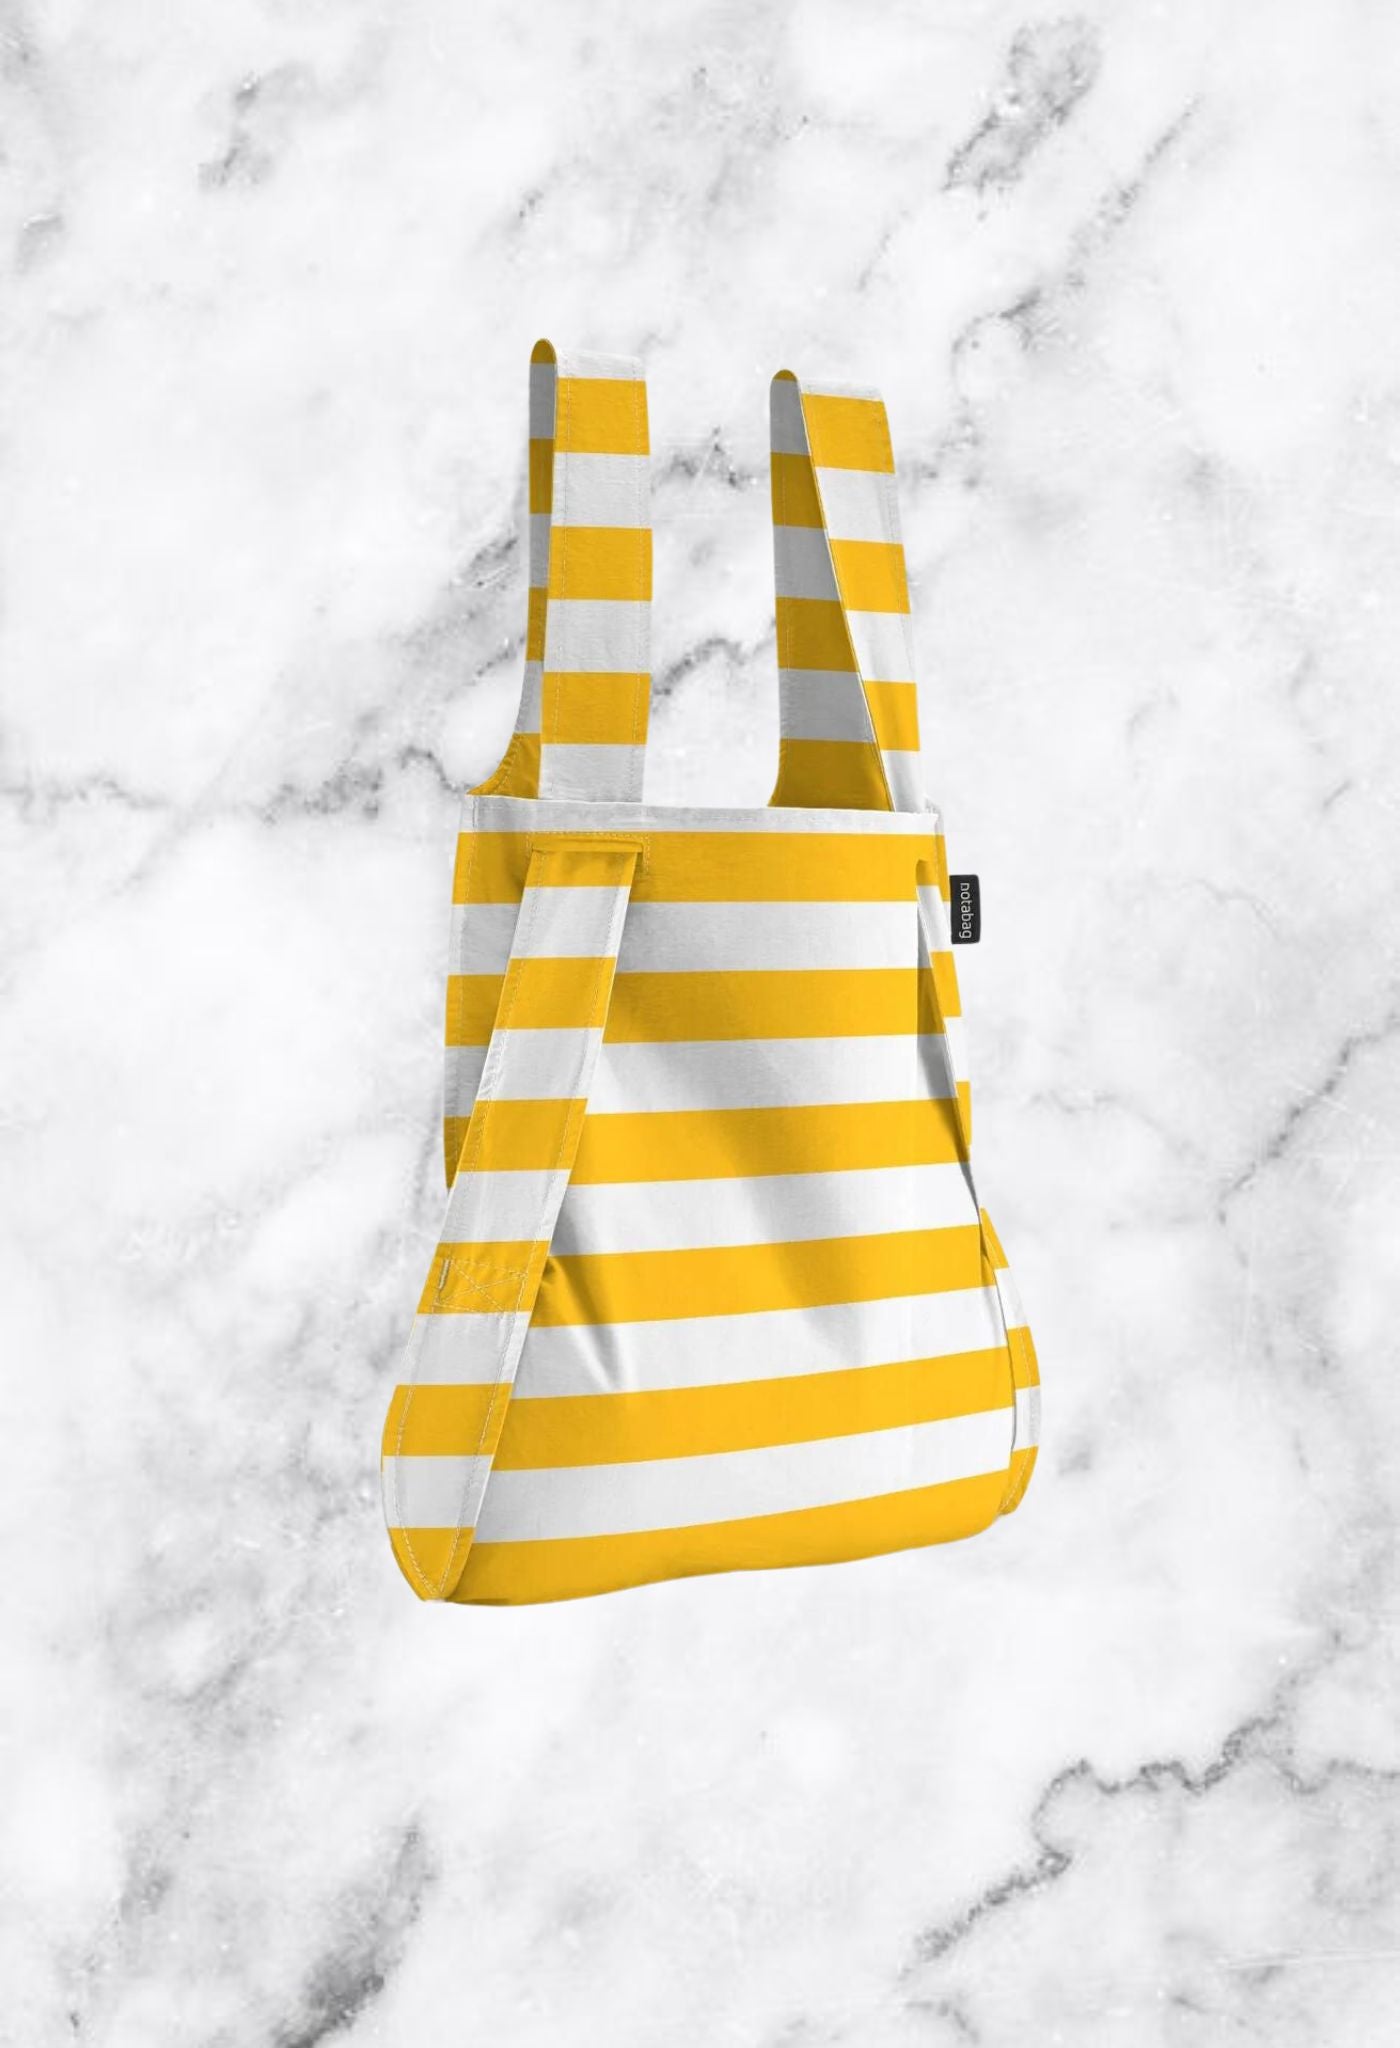 Rucksack-Einkaufstasche mit goldenen Streifen 